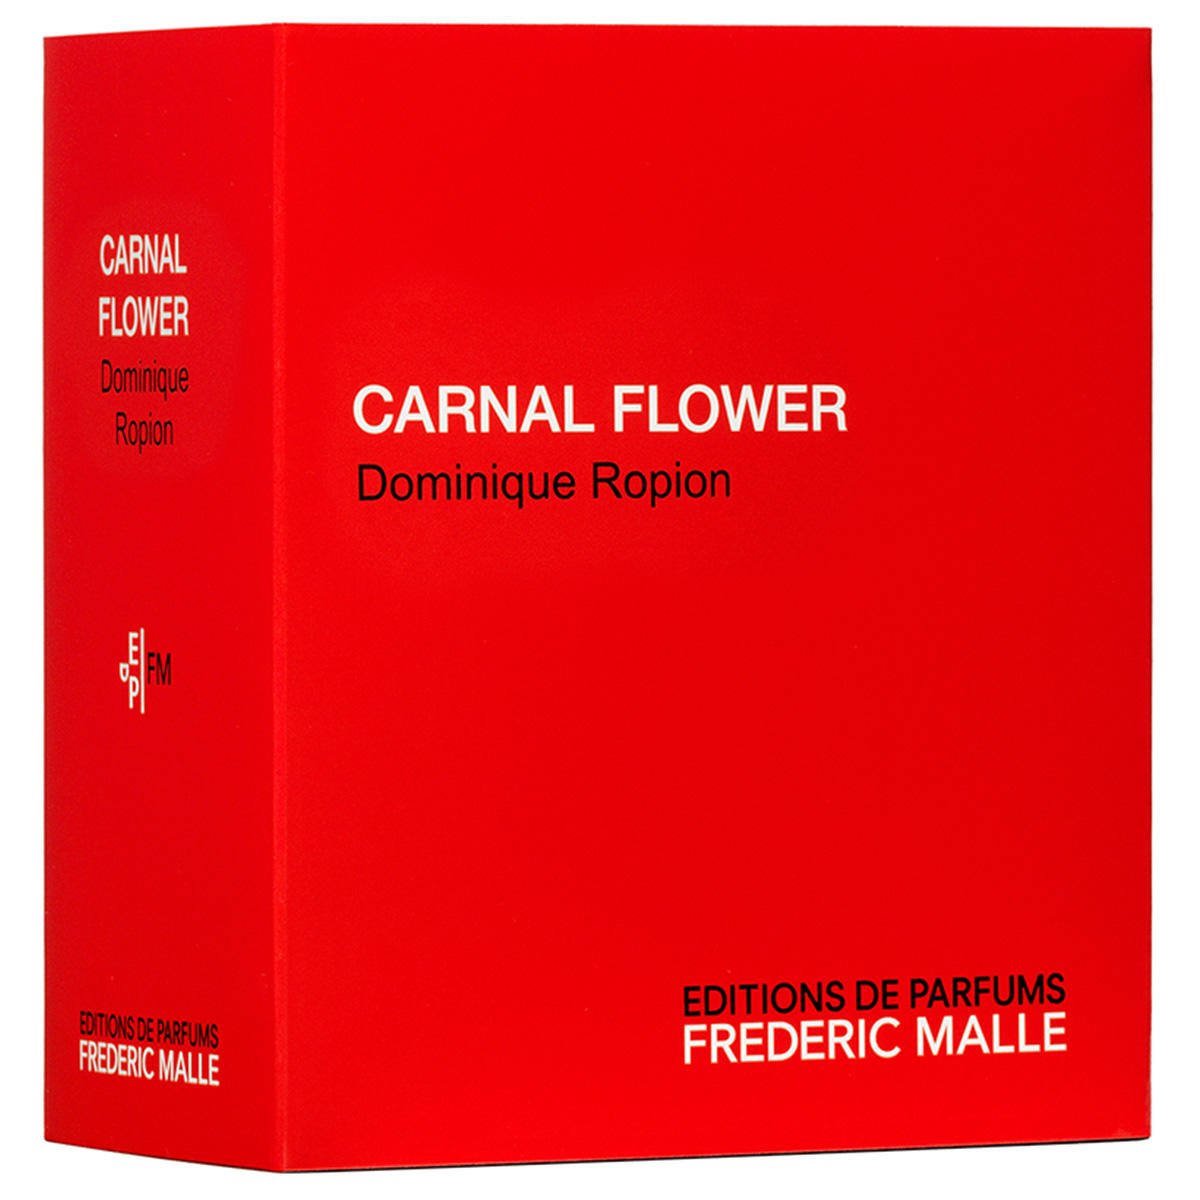 EDITIONS DE PARFUMS FREDERIC MALLE CARNAL FLOWER EAU DE PARFUM 50 ml - 2